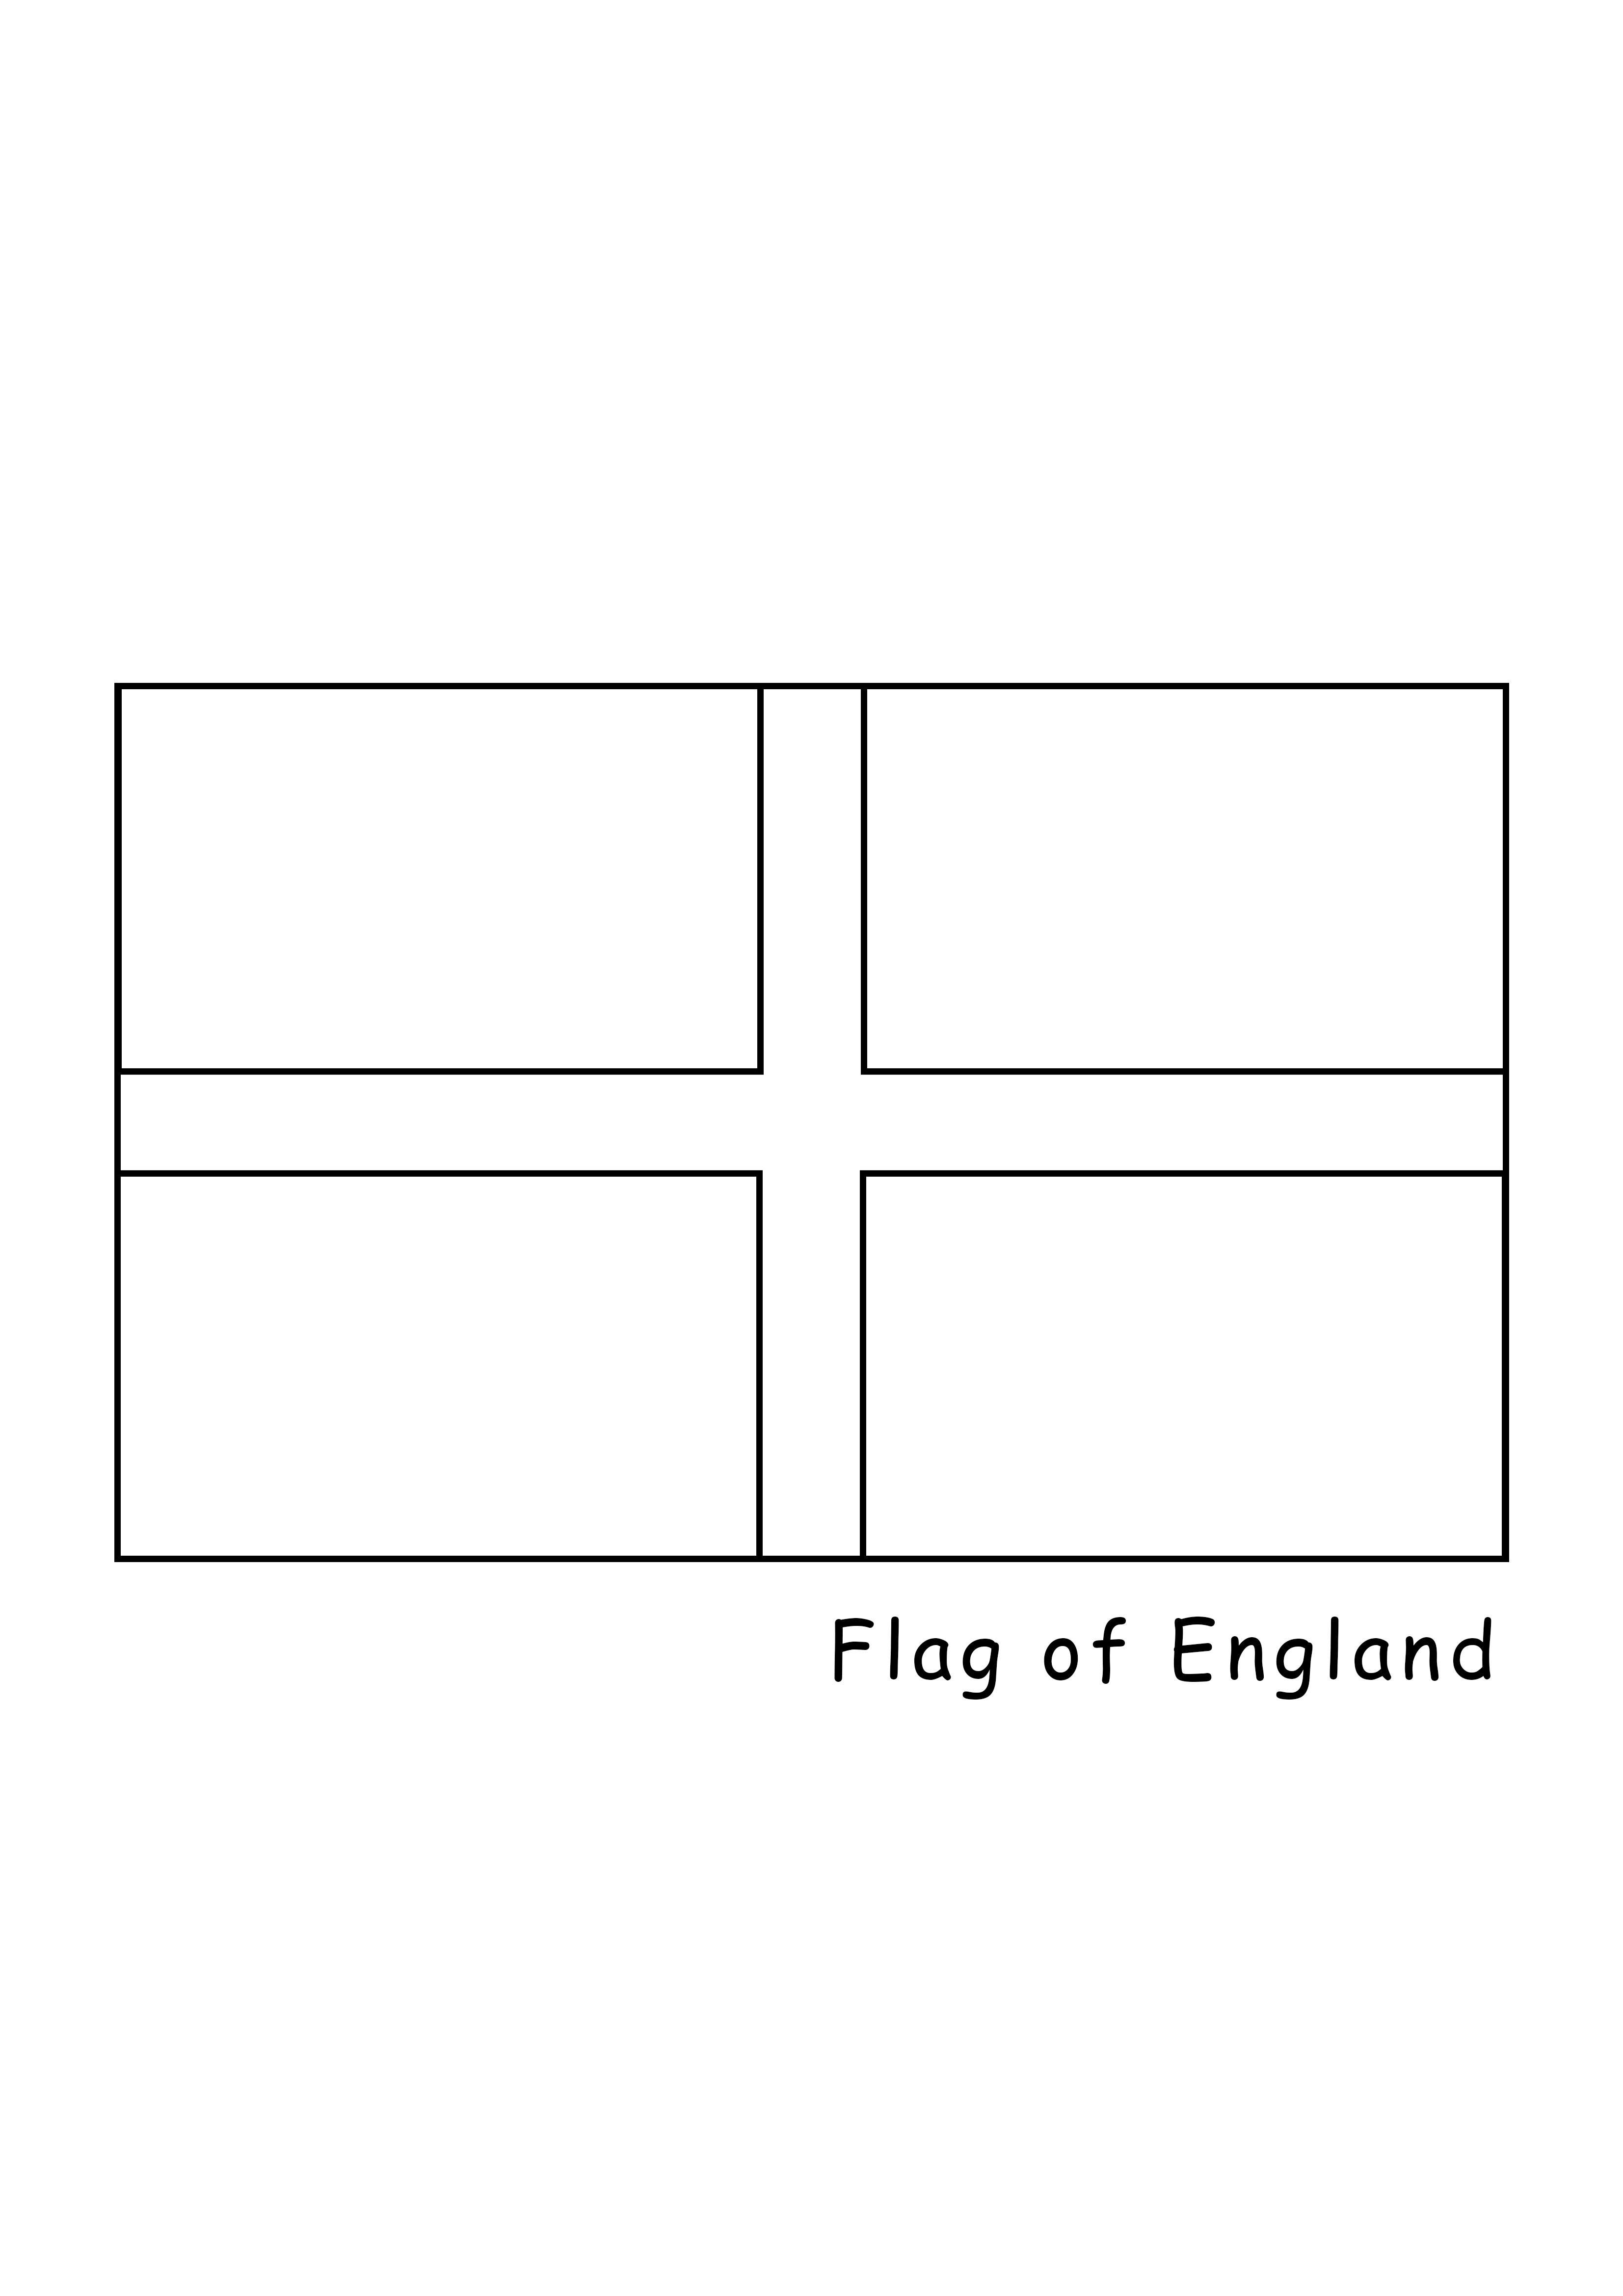 Flaga Anglii do wydrukowania i pokolorowania za darmo